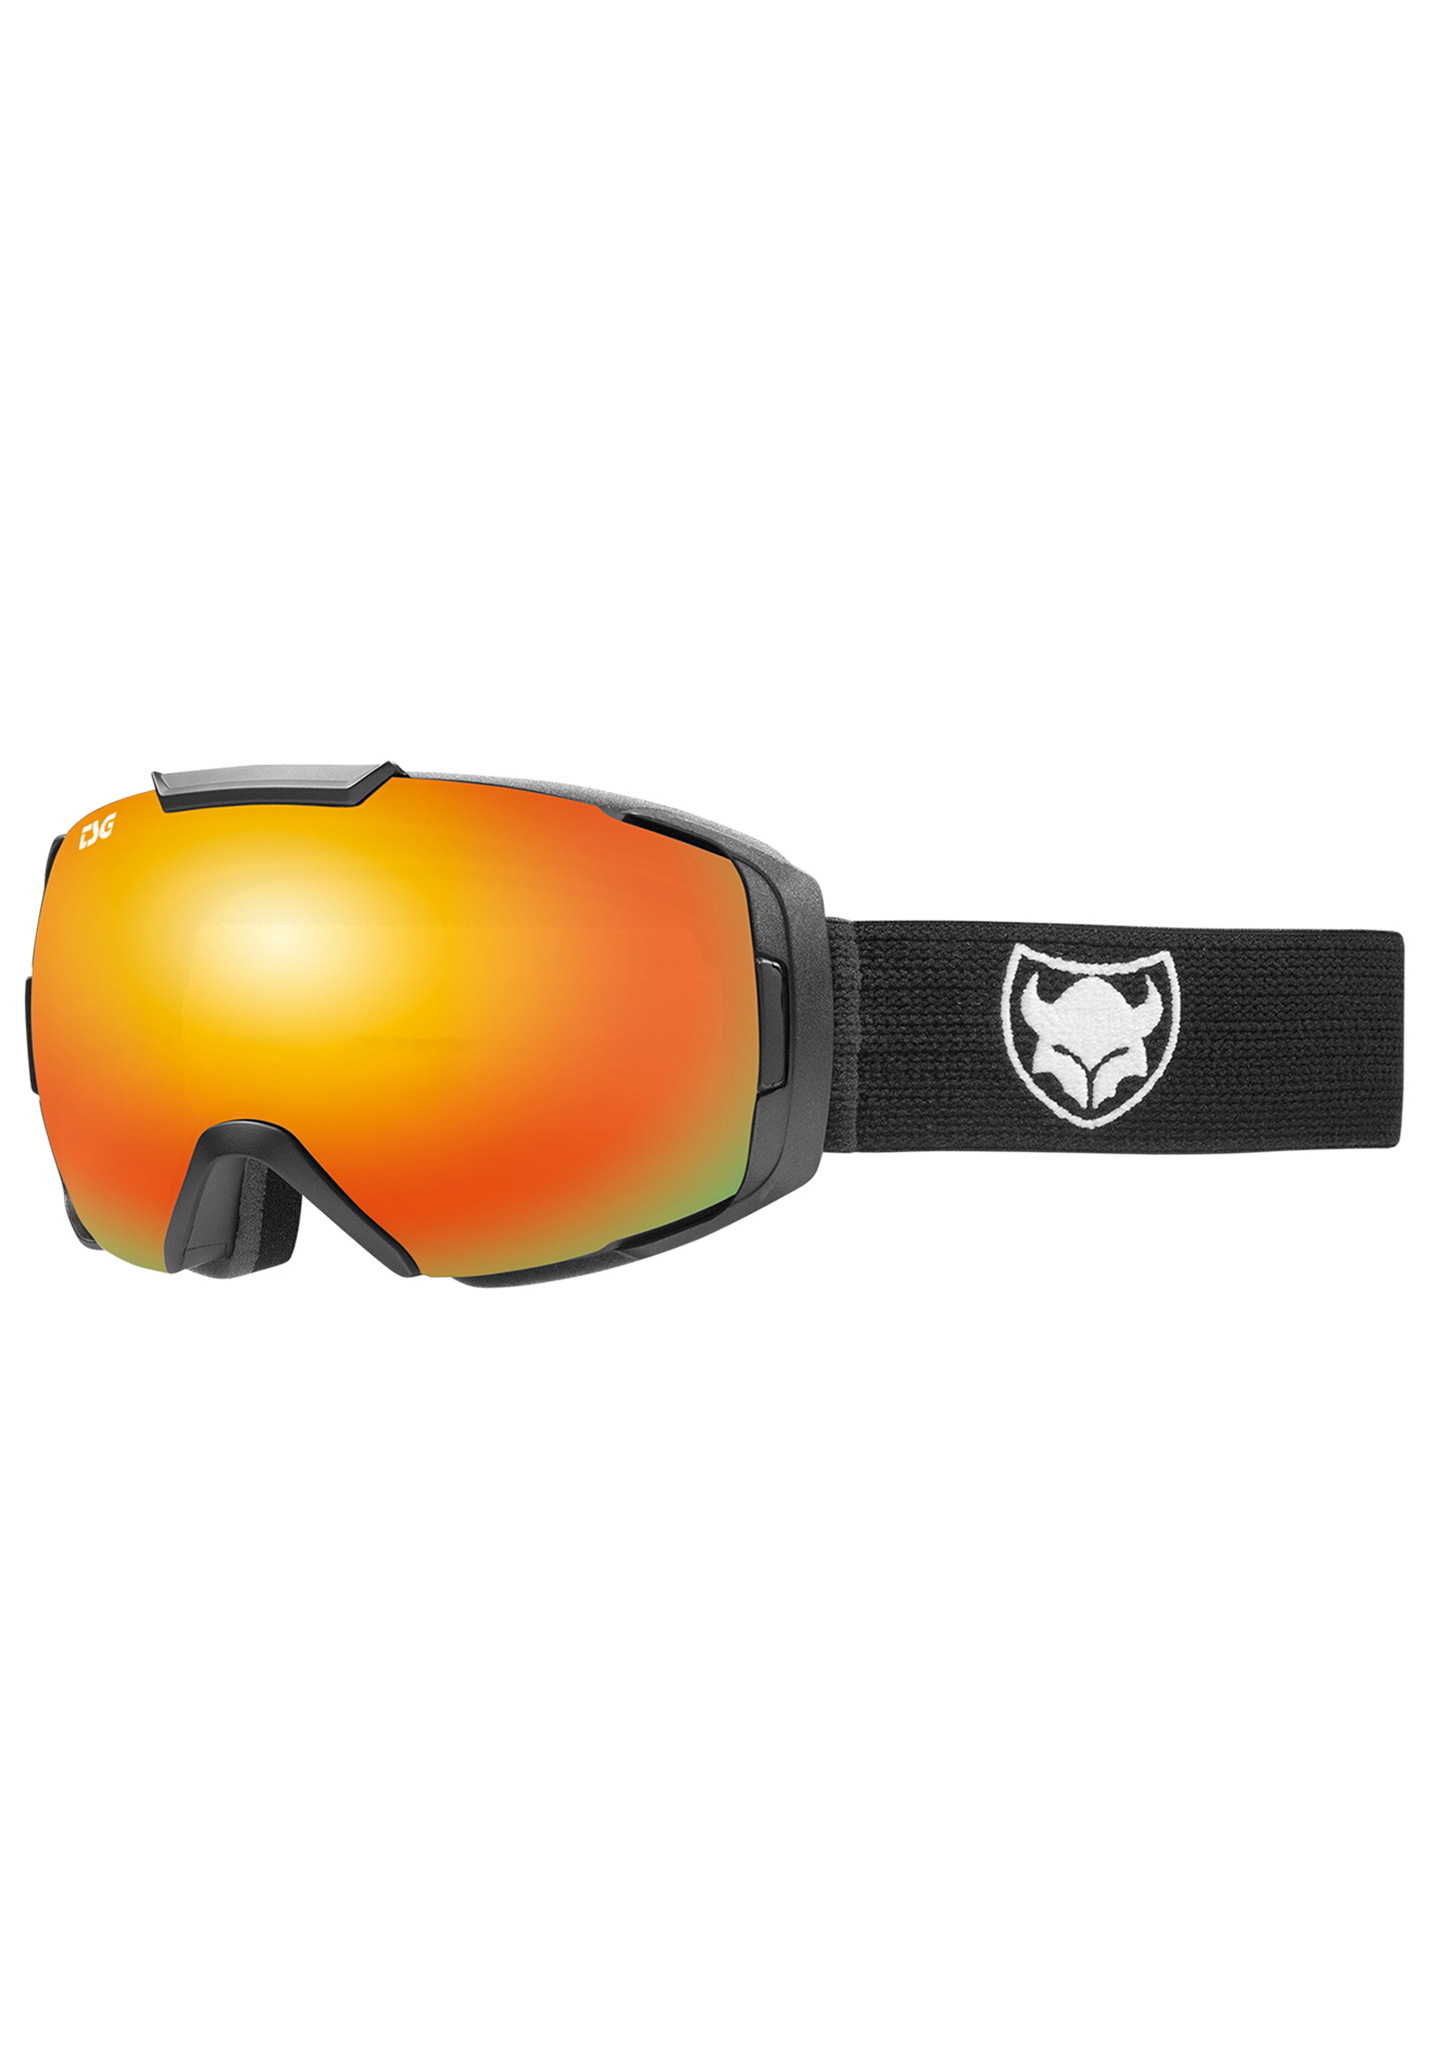 TSG One Snowboardbrillen massiv schwarz / rot chrom One Size